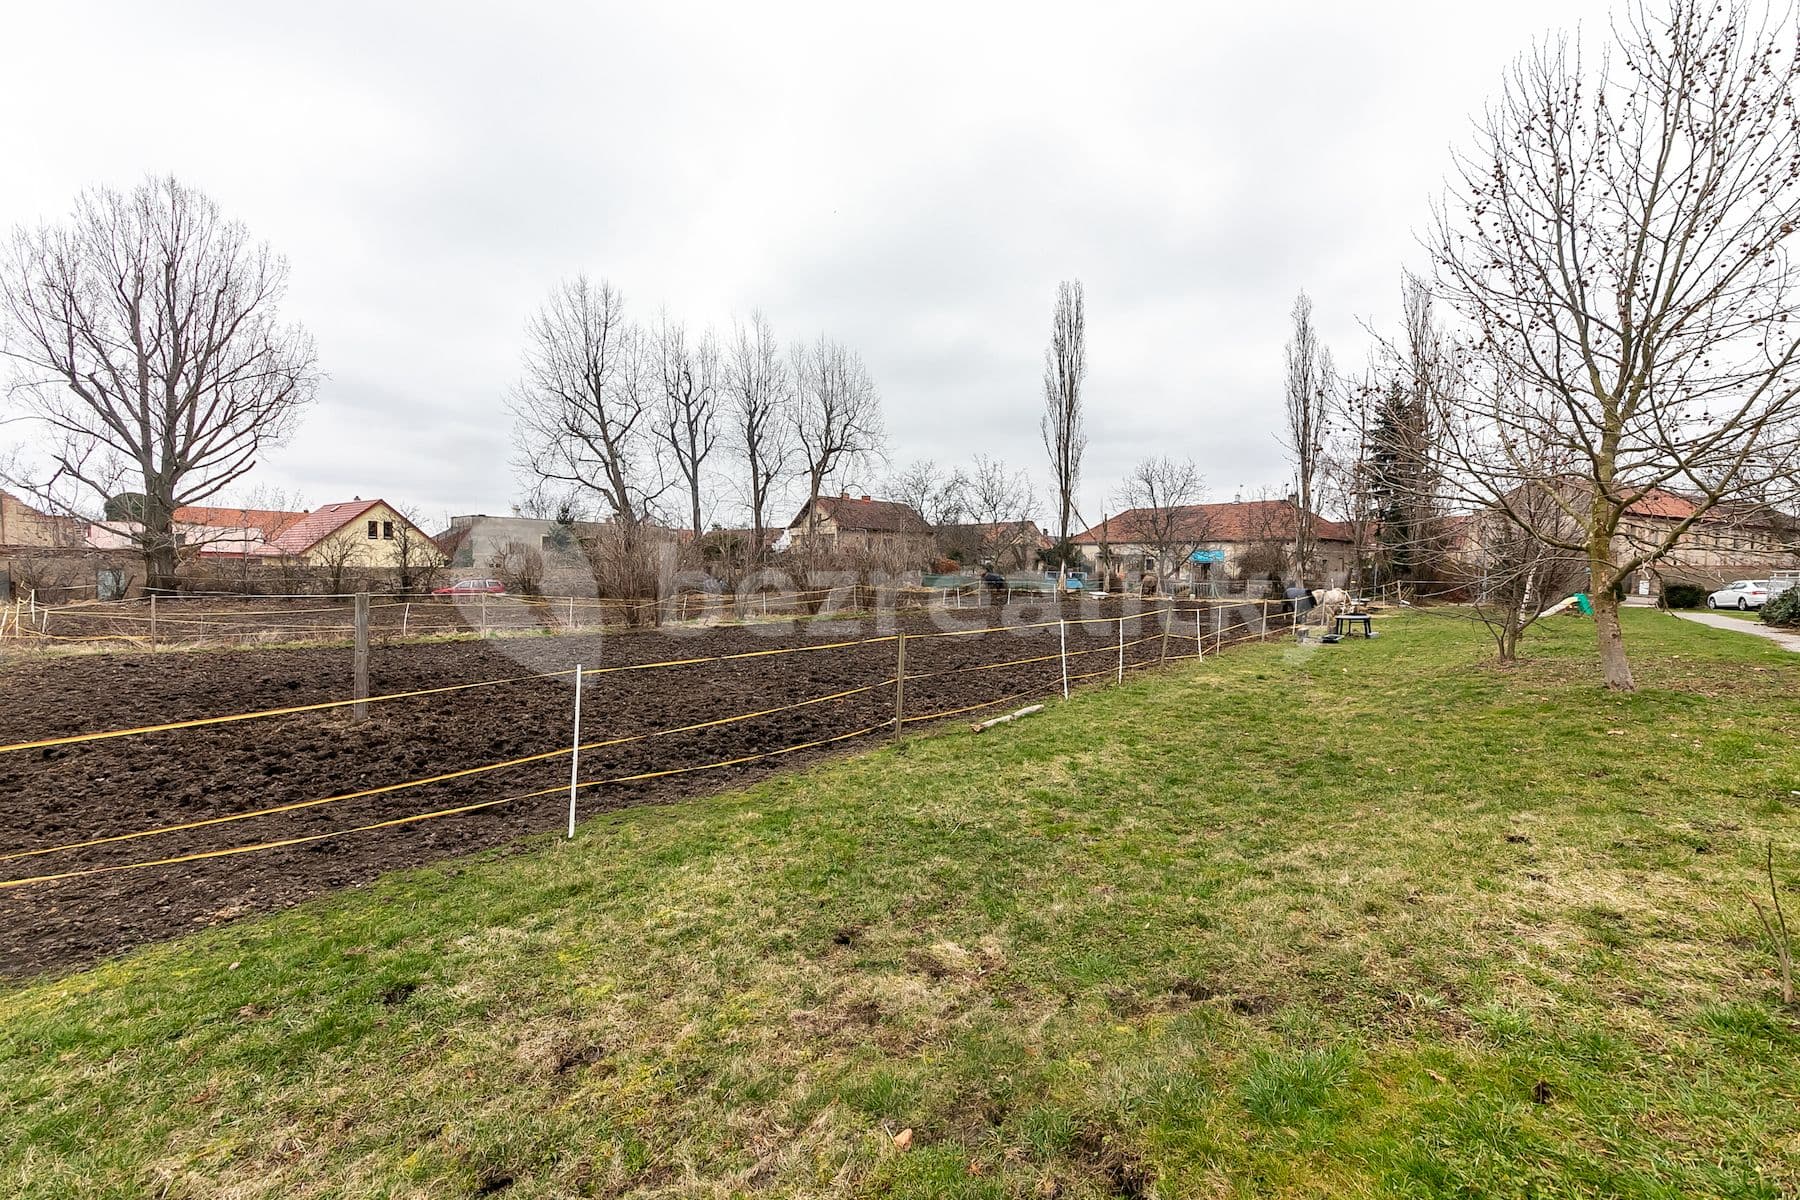 plot for sale, 2,412 m², Holubice, Holubice, Středočeský Region